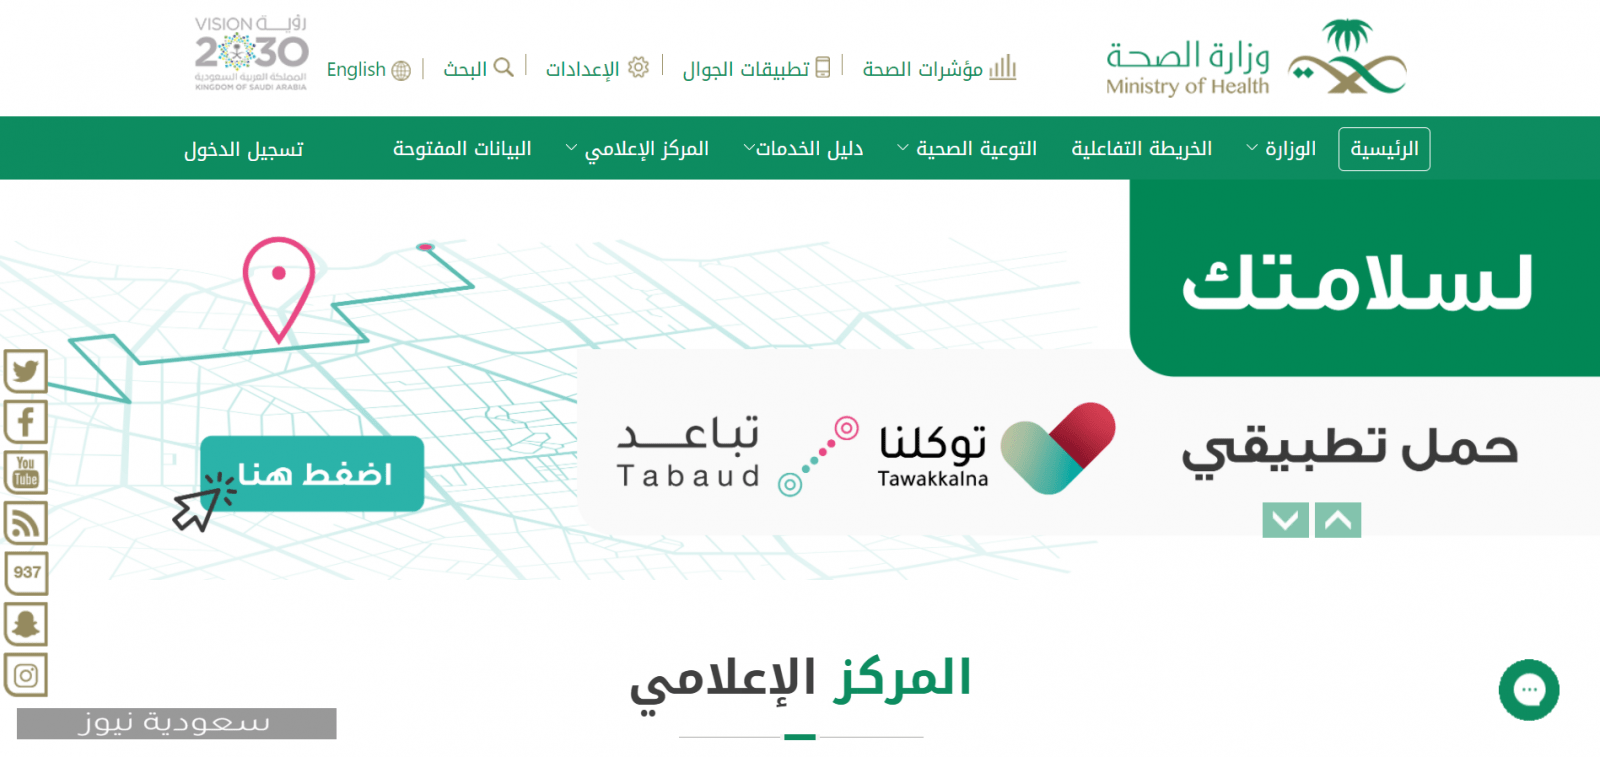 خطوات تغيير كلمة مرور إيميل وزارة الصحة وطريقة إنشاء البريد الإلكتروني بالوزارة 1442 سعودية نيوز